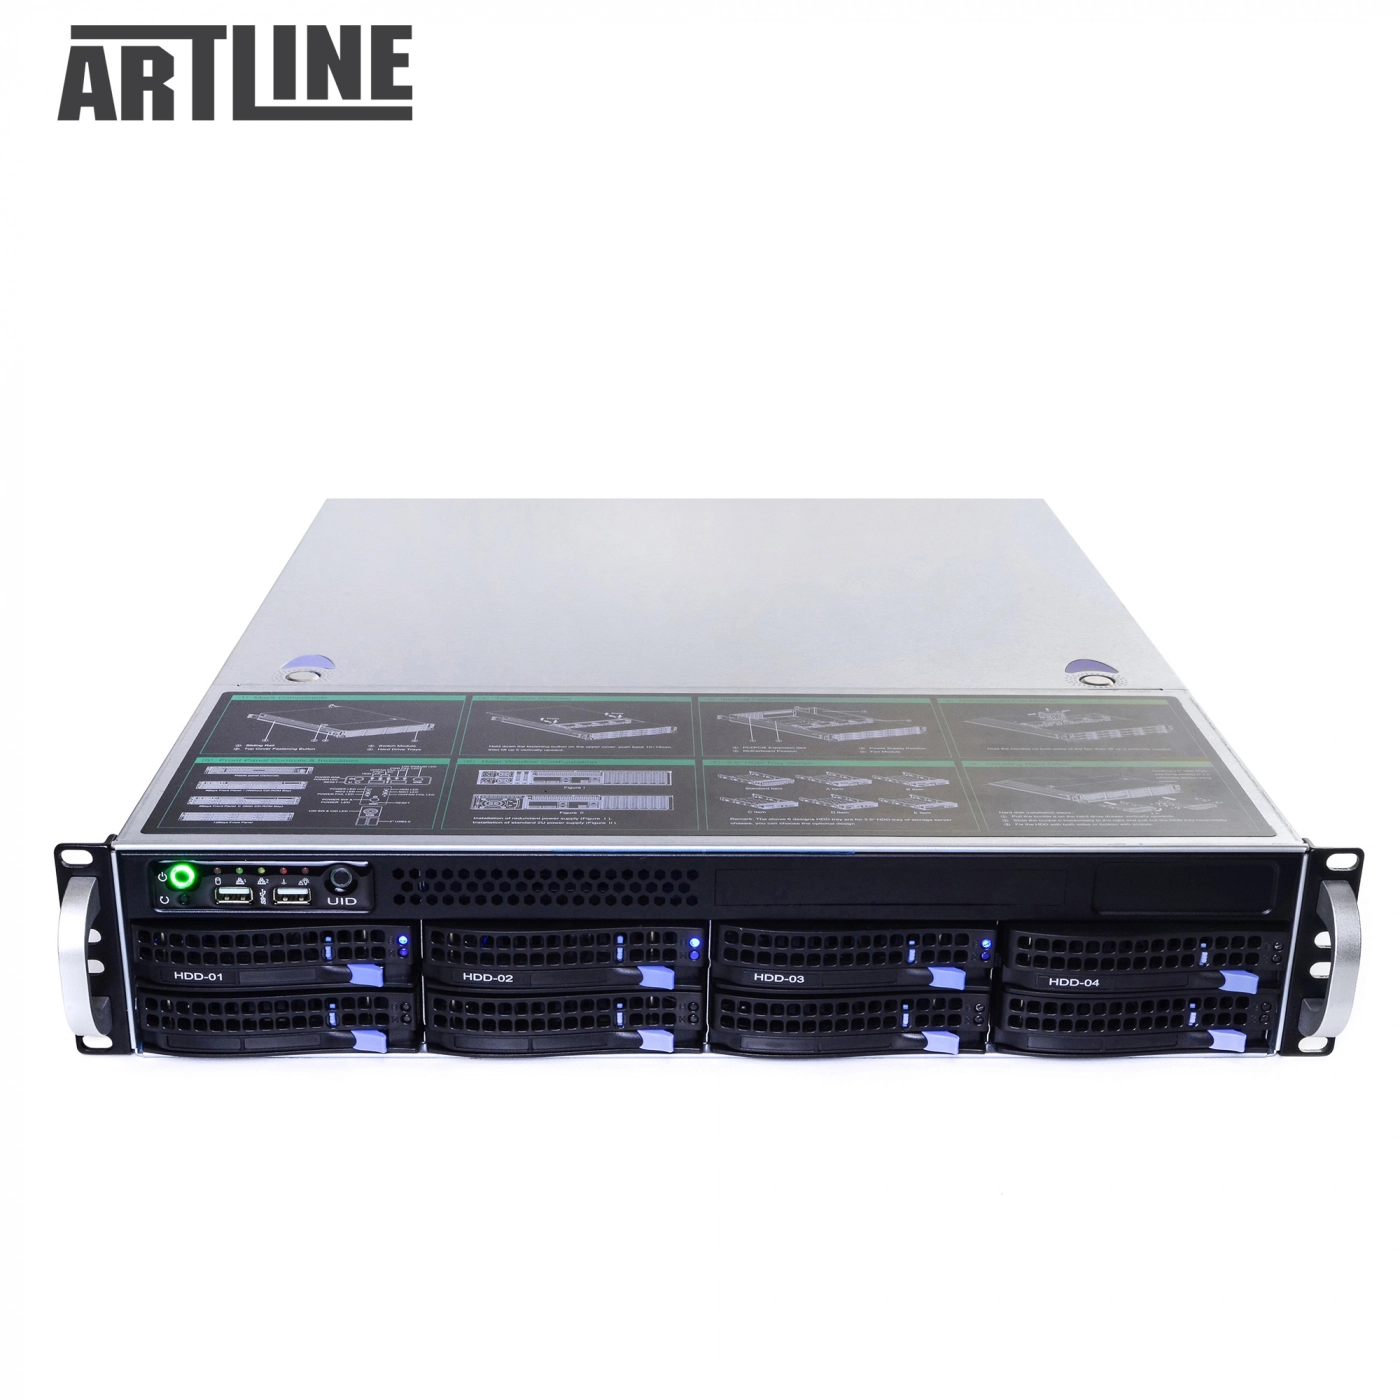 Купить Сервер ARTLINE Business R63v05 - фото 9